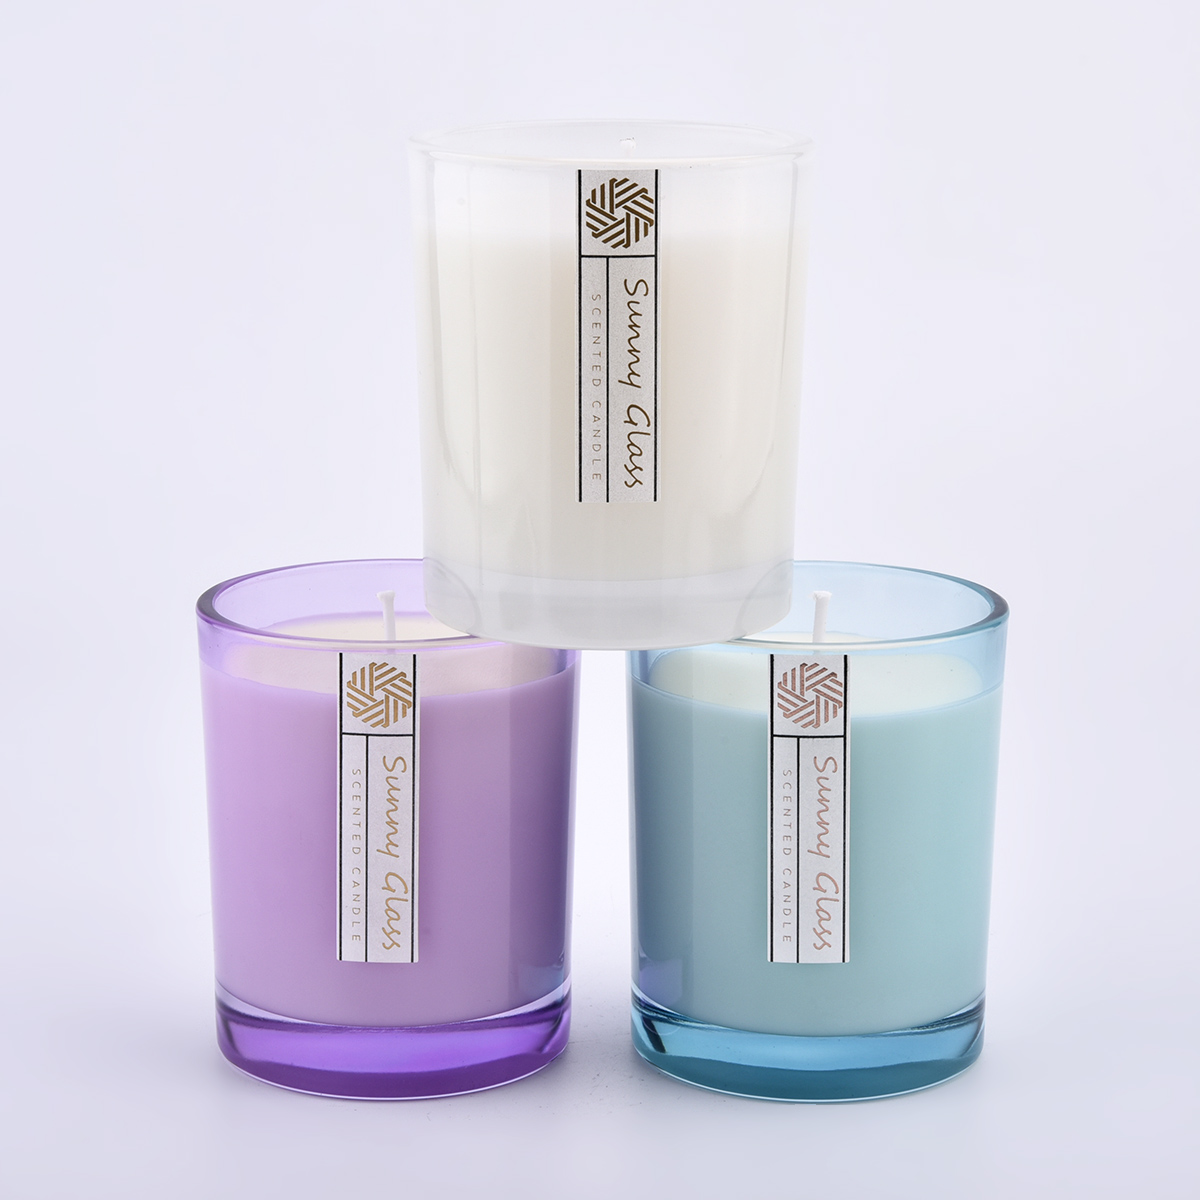 słoiki szklane świeczniki w niestandardowym kolorze przezroczystym i etykiet